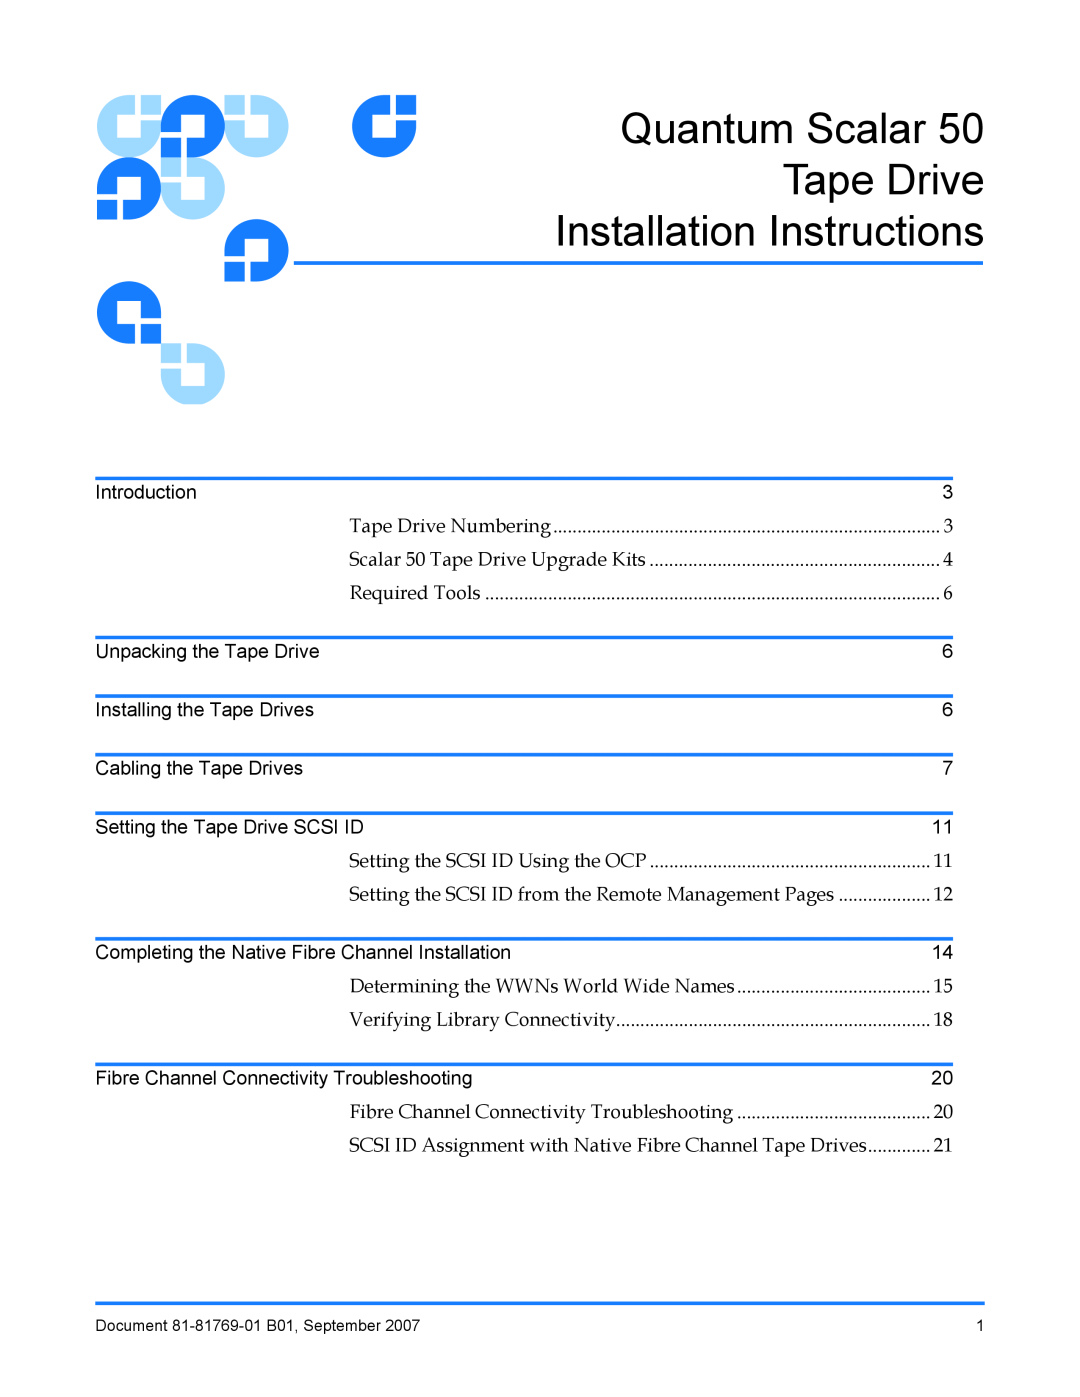 Quantum Audio Scalar 50 installation instructions Quantum Scalar Tape Drive Installation Instructions 